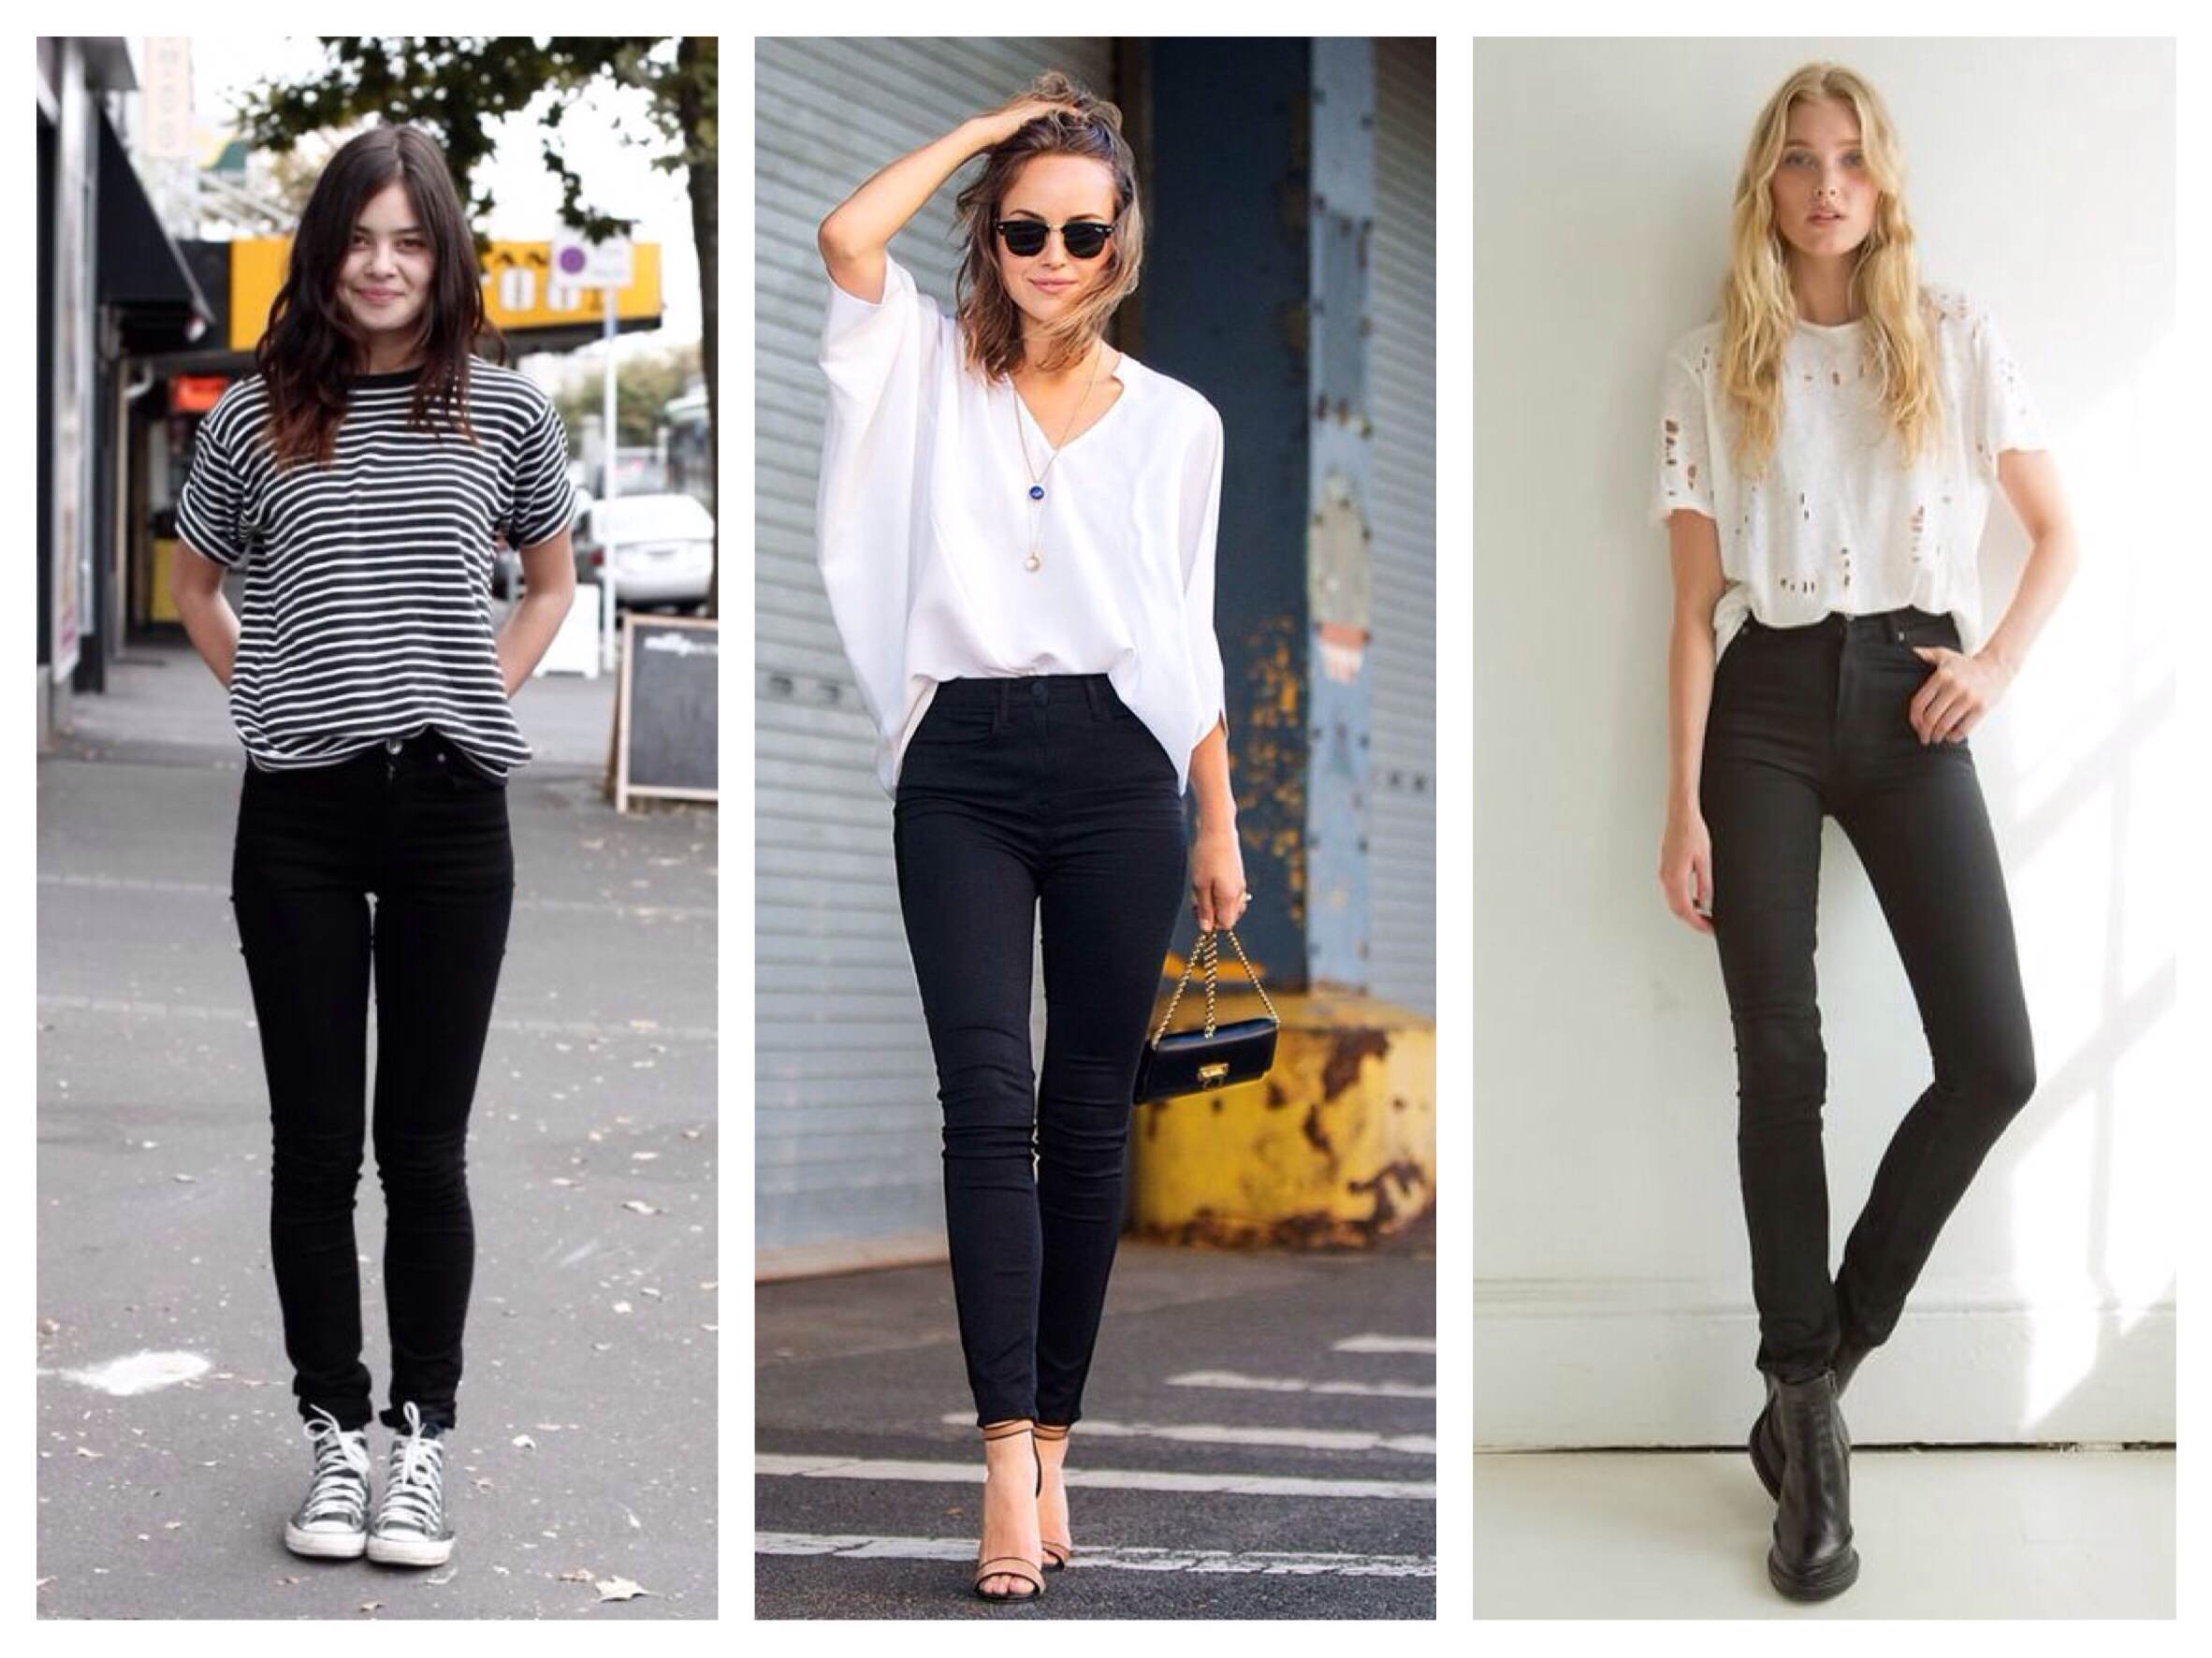 Узкие джинсы женские с чем носить фото